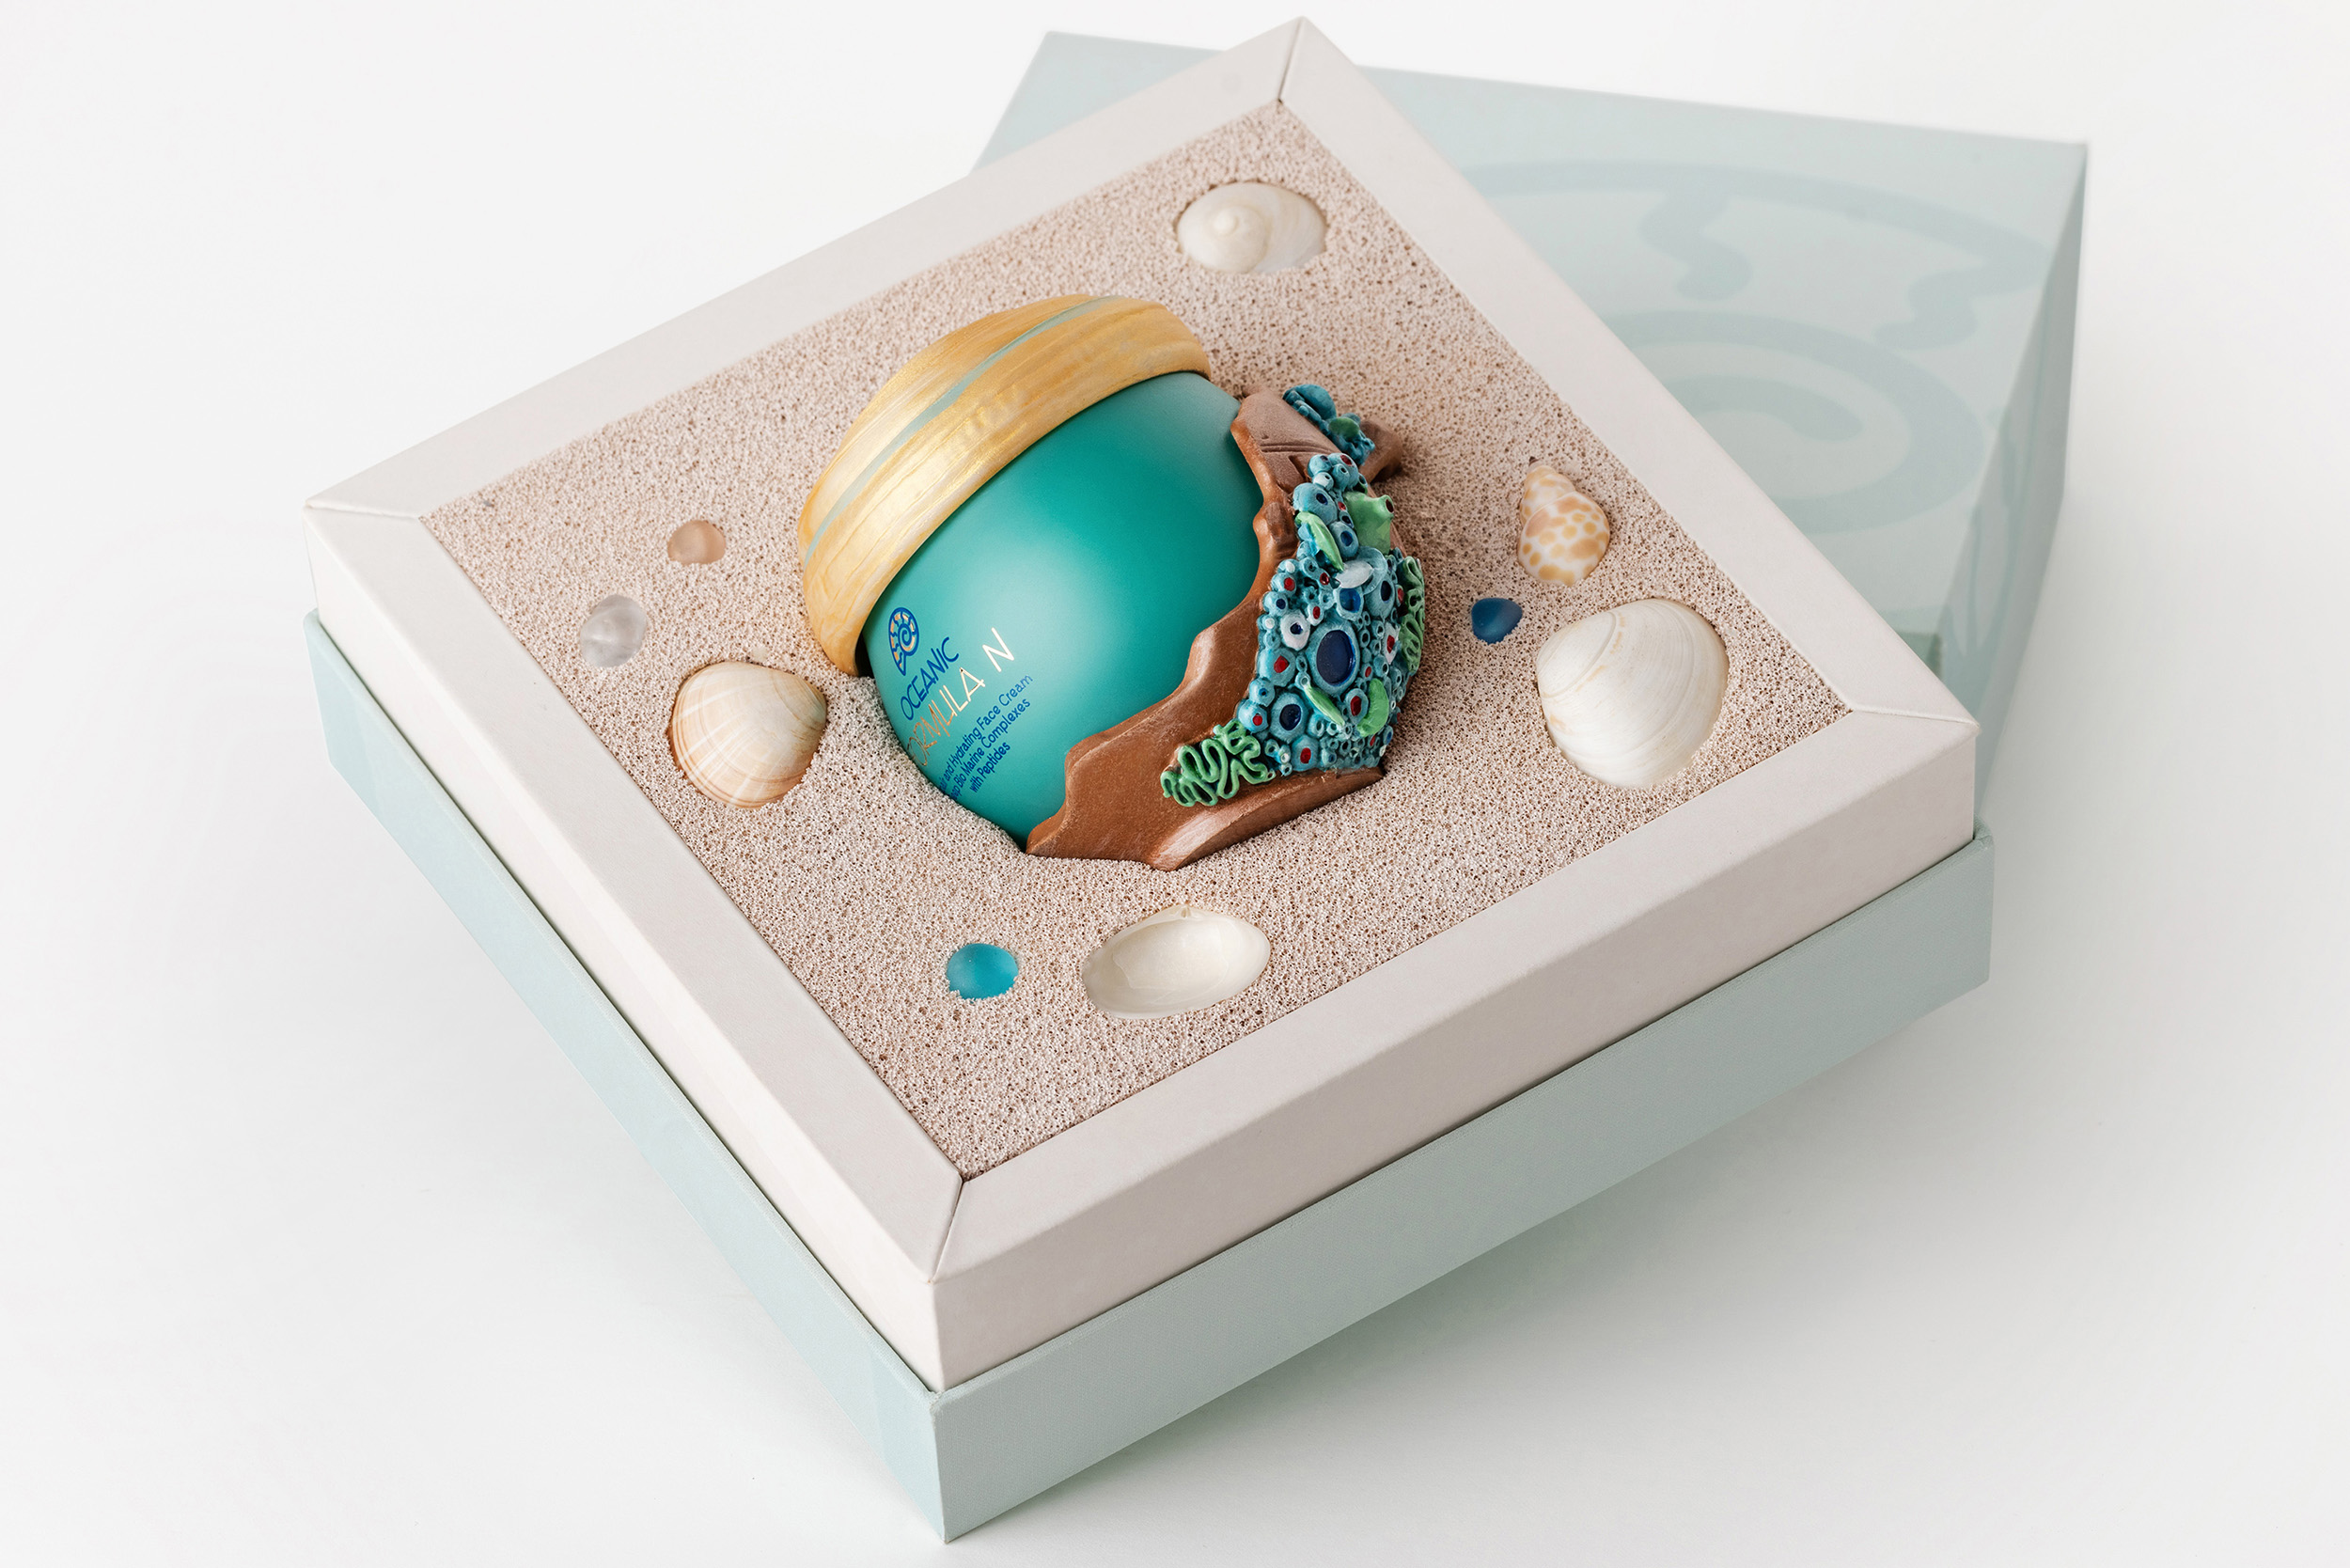 Eclectic M Studio Design Oceanic Formula N Face Cream Packaging Design